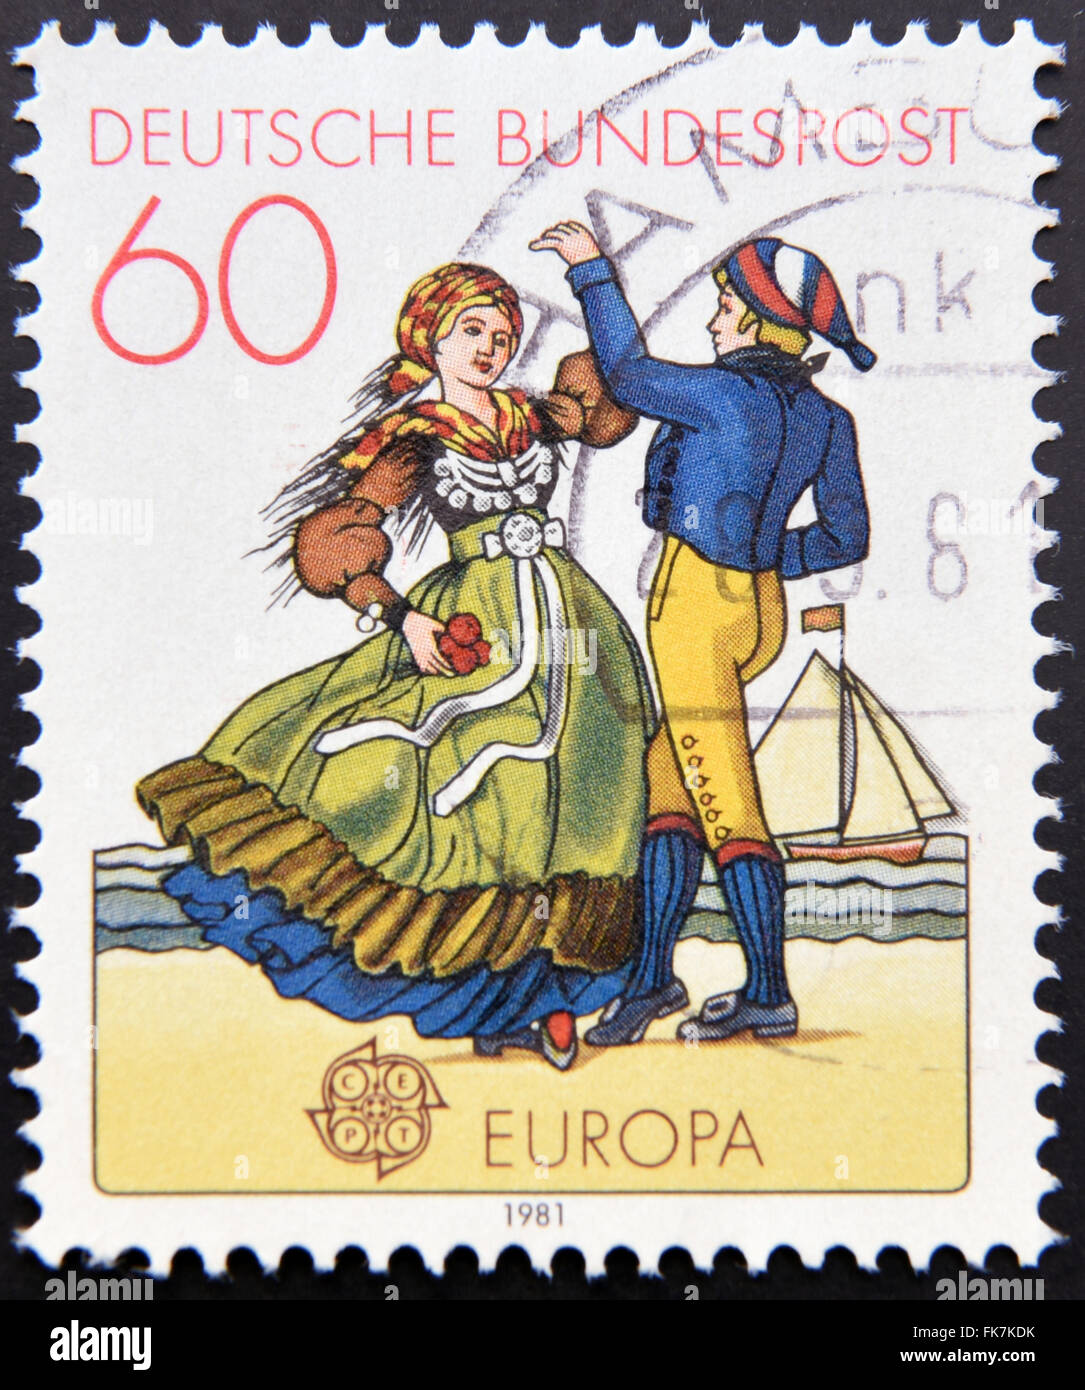 Allemagne - circa 1981 : timbre imprimé en Allemagne du nord de l'Allemagne montre couple dancing in costumes régionaux, vers 1981 Banque D'Images